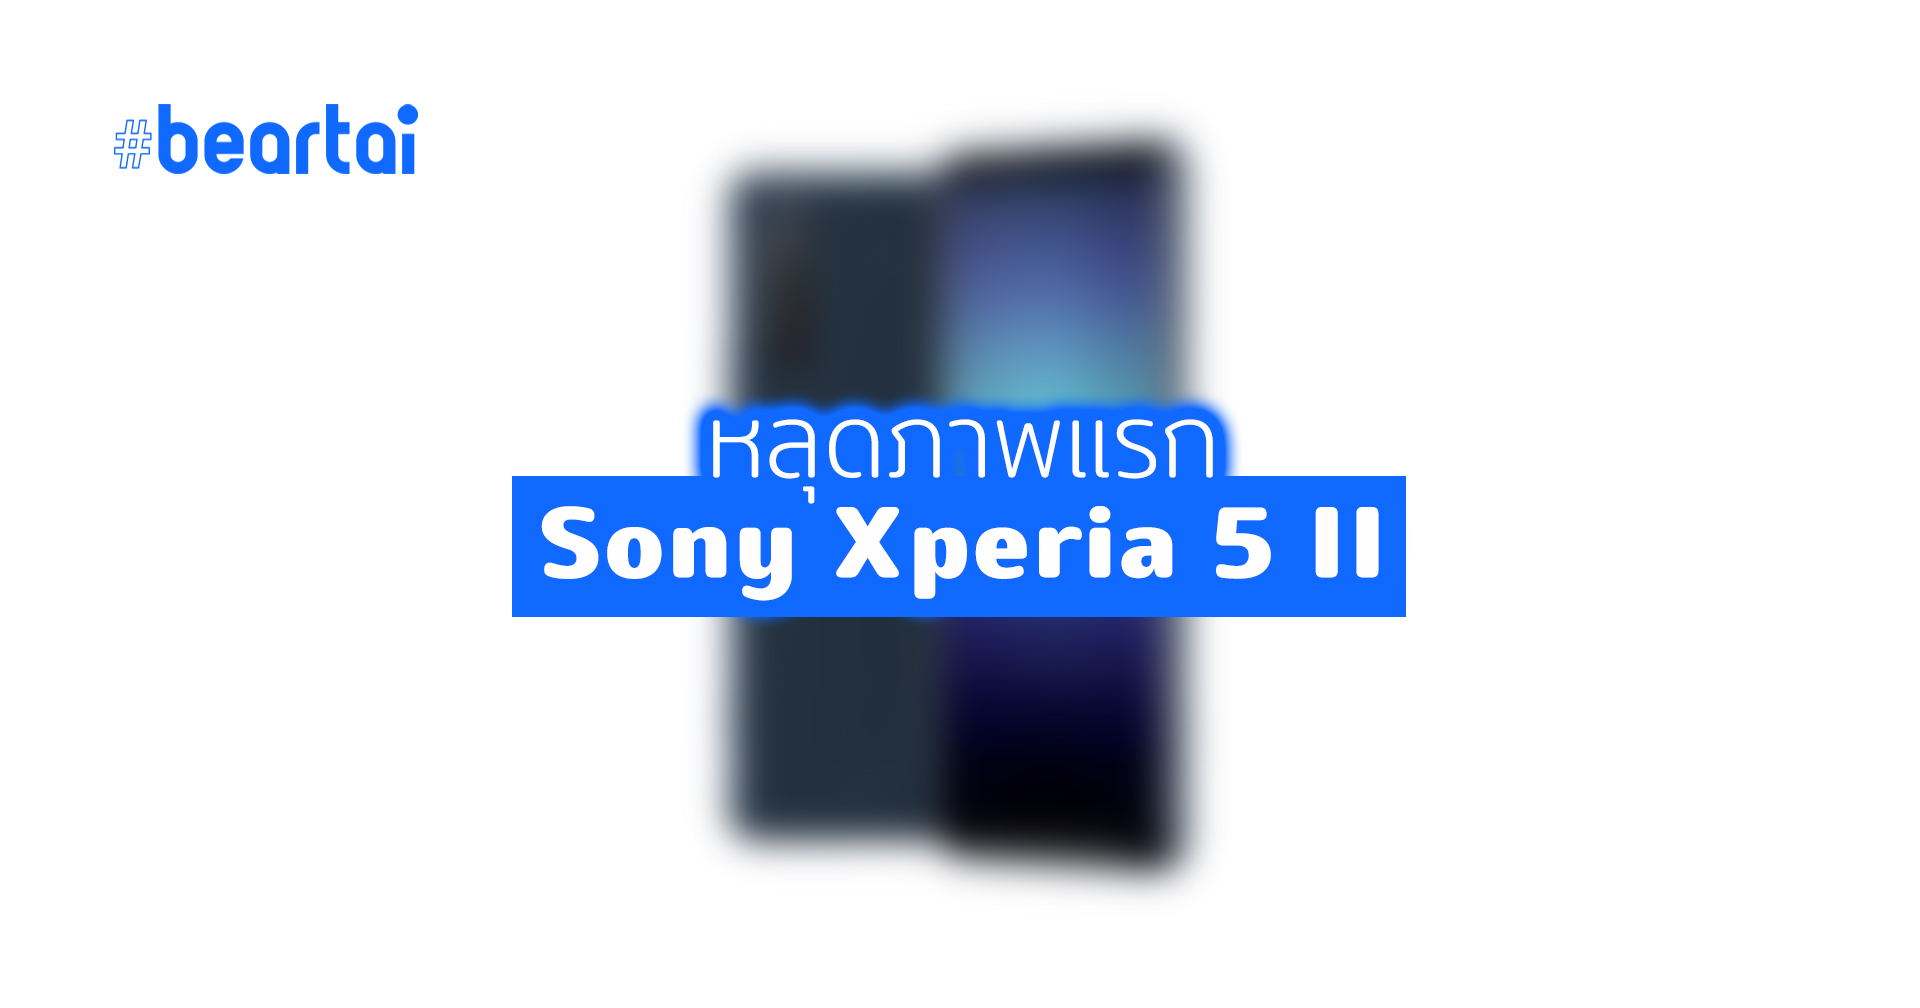 หลุดภาพ Sony Xperia 5 II ดีไซน์คล้ายเดิม พร้อมปุ่มชัตเตอร์ และหน้าจอ FHD+